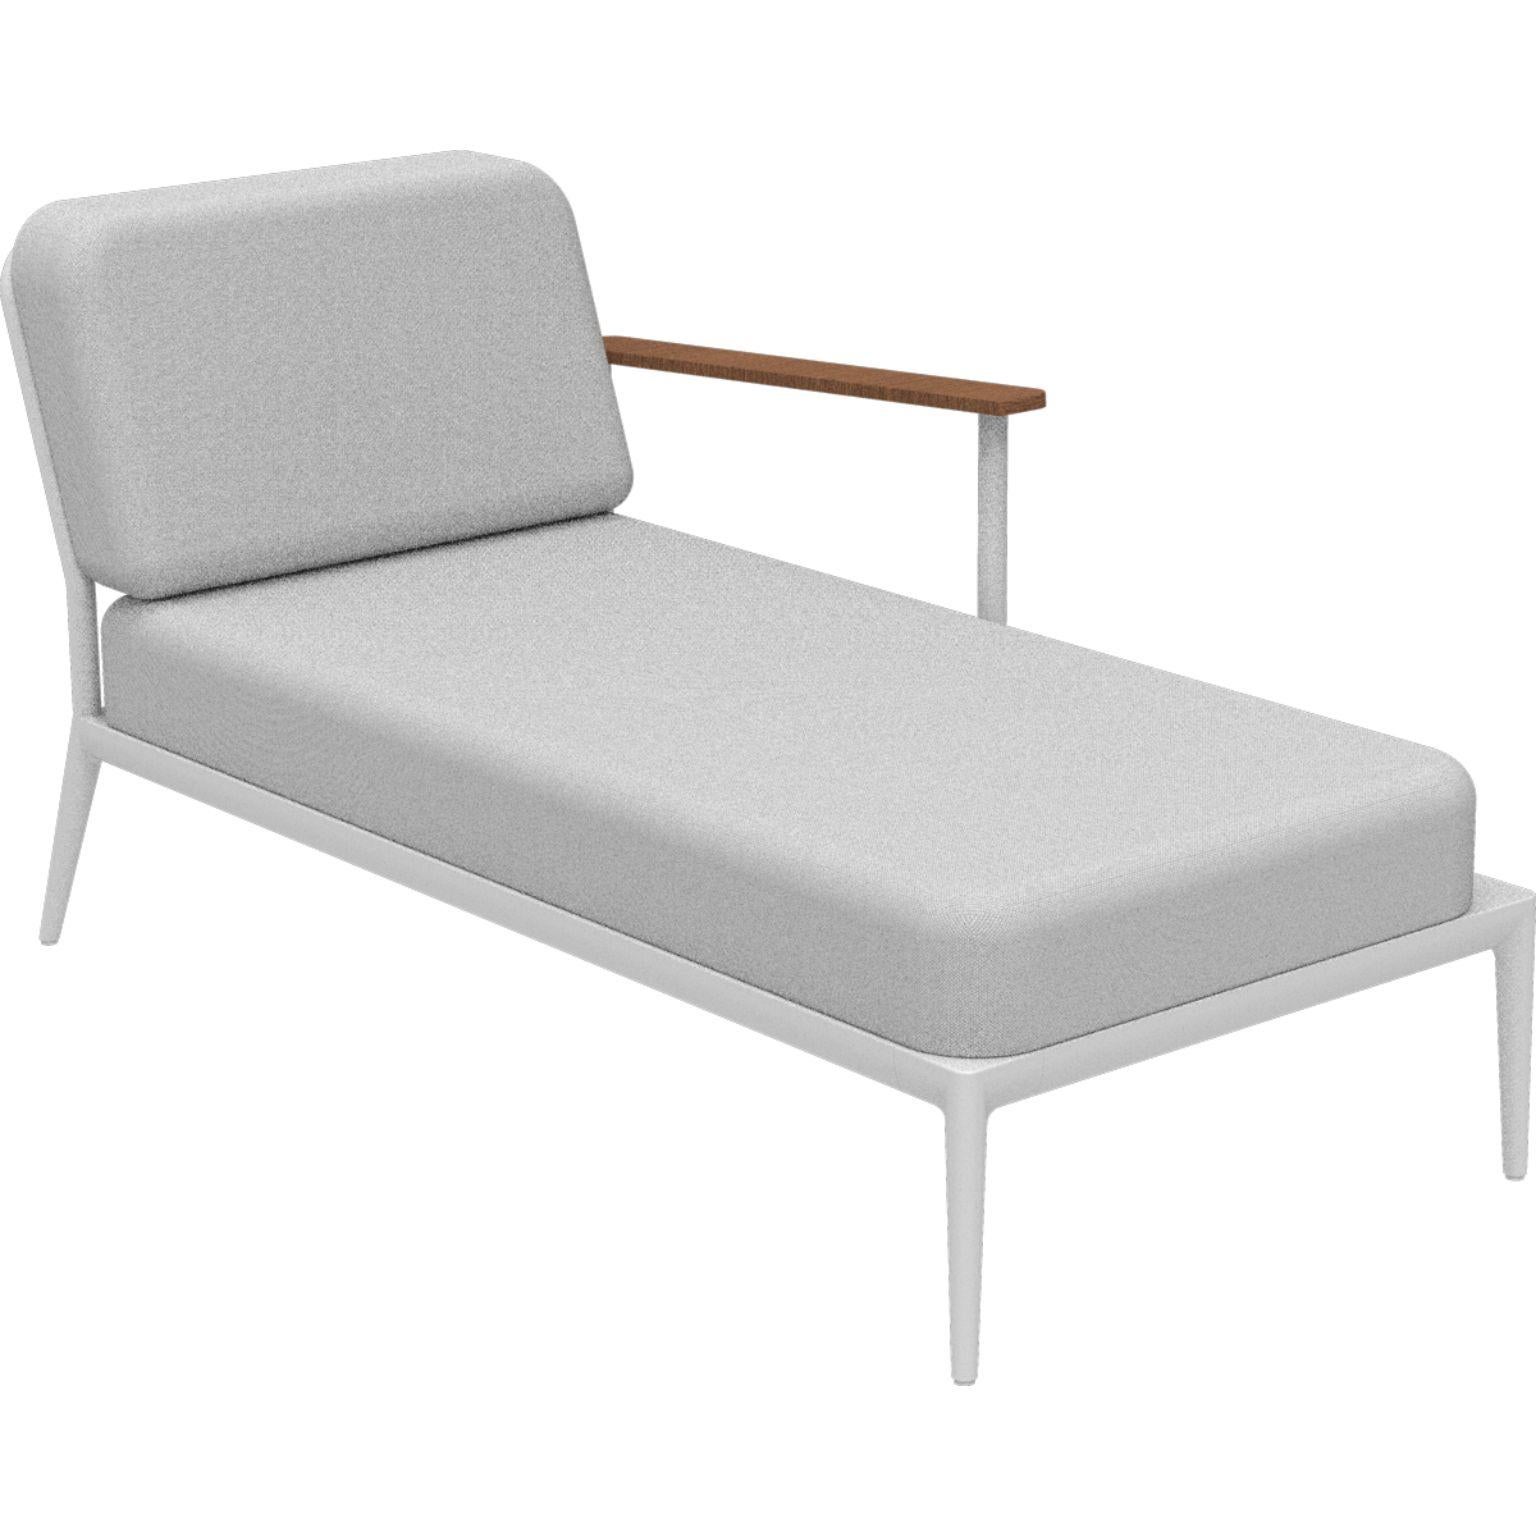 Chaise longue gauche Nature White par MOWEE
Dimensions : D155 x L76 x H81 cm (hauteur du siège : 42 cm) : D155 x L76 x H81 cm (hauteur d'assise 42 cm).
Matériau : Aluminium, rembourrage et bois d'Iroko.
Poids : 28 kg.
Également disponible en